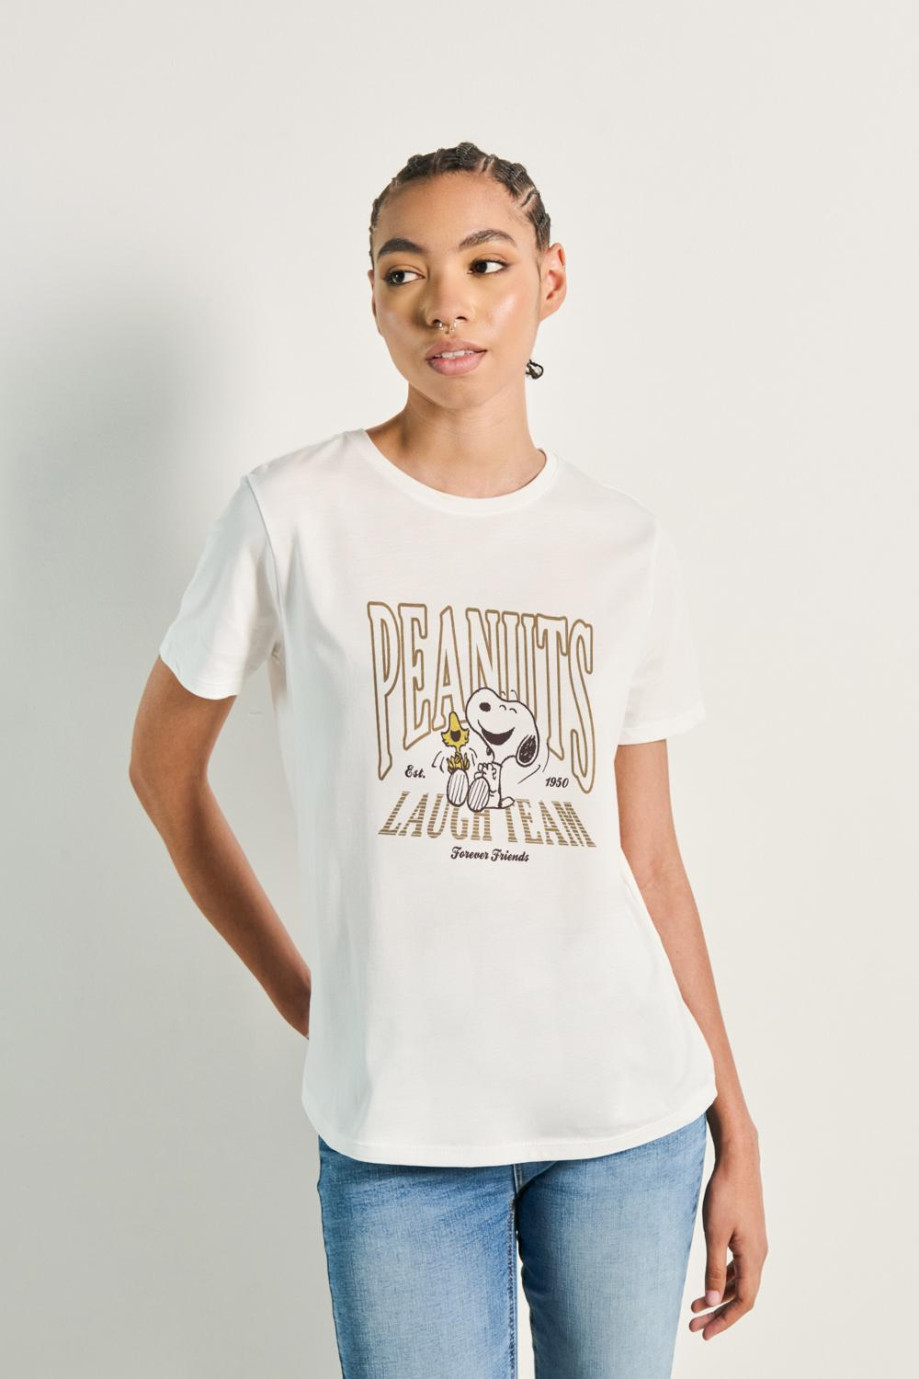 Camiseta cuello redondo unicolor con diseño de Snoopy